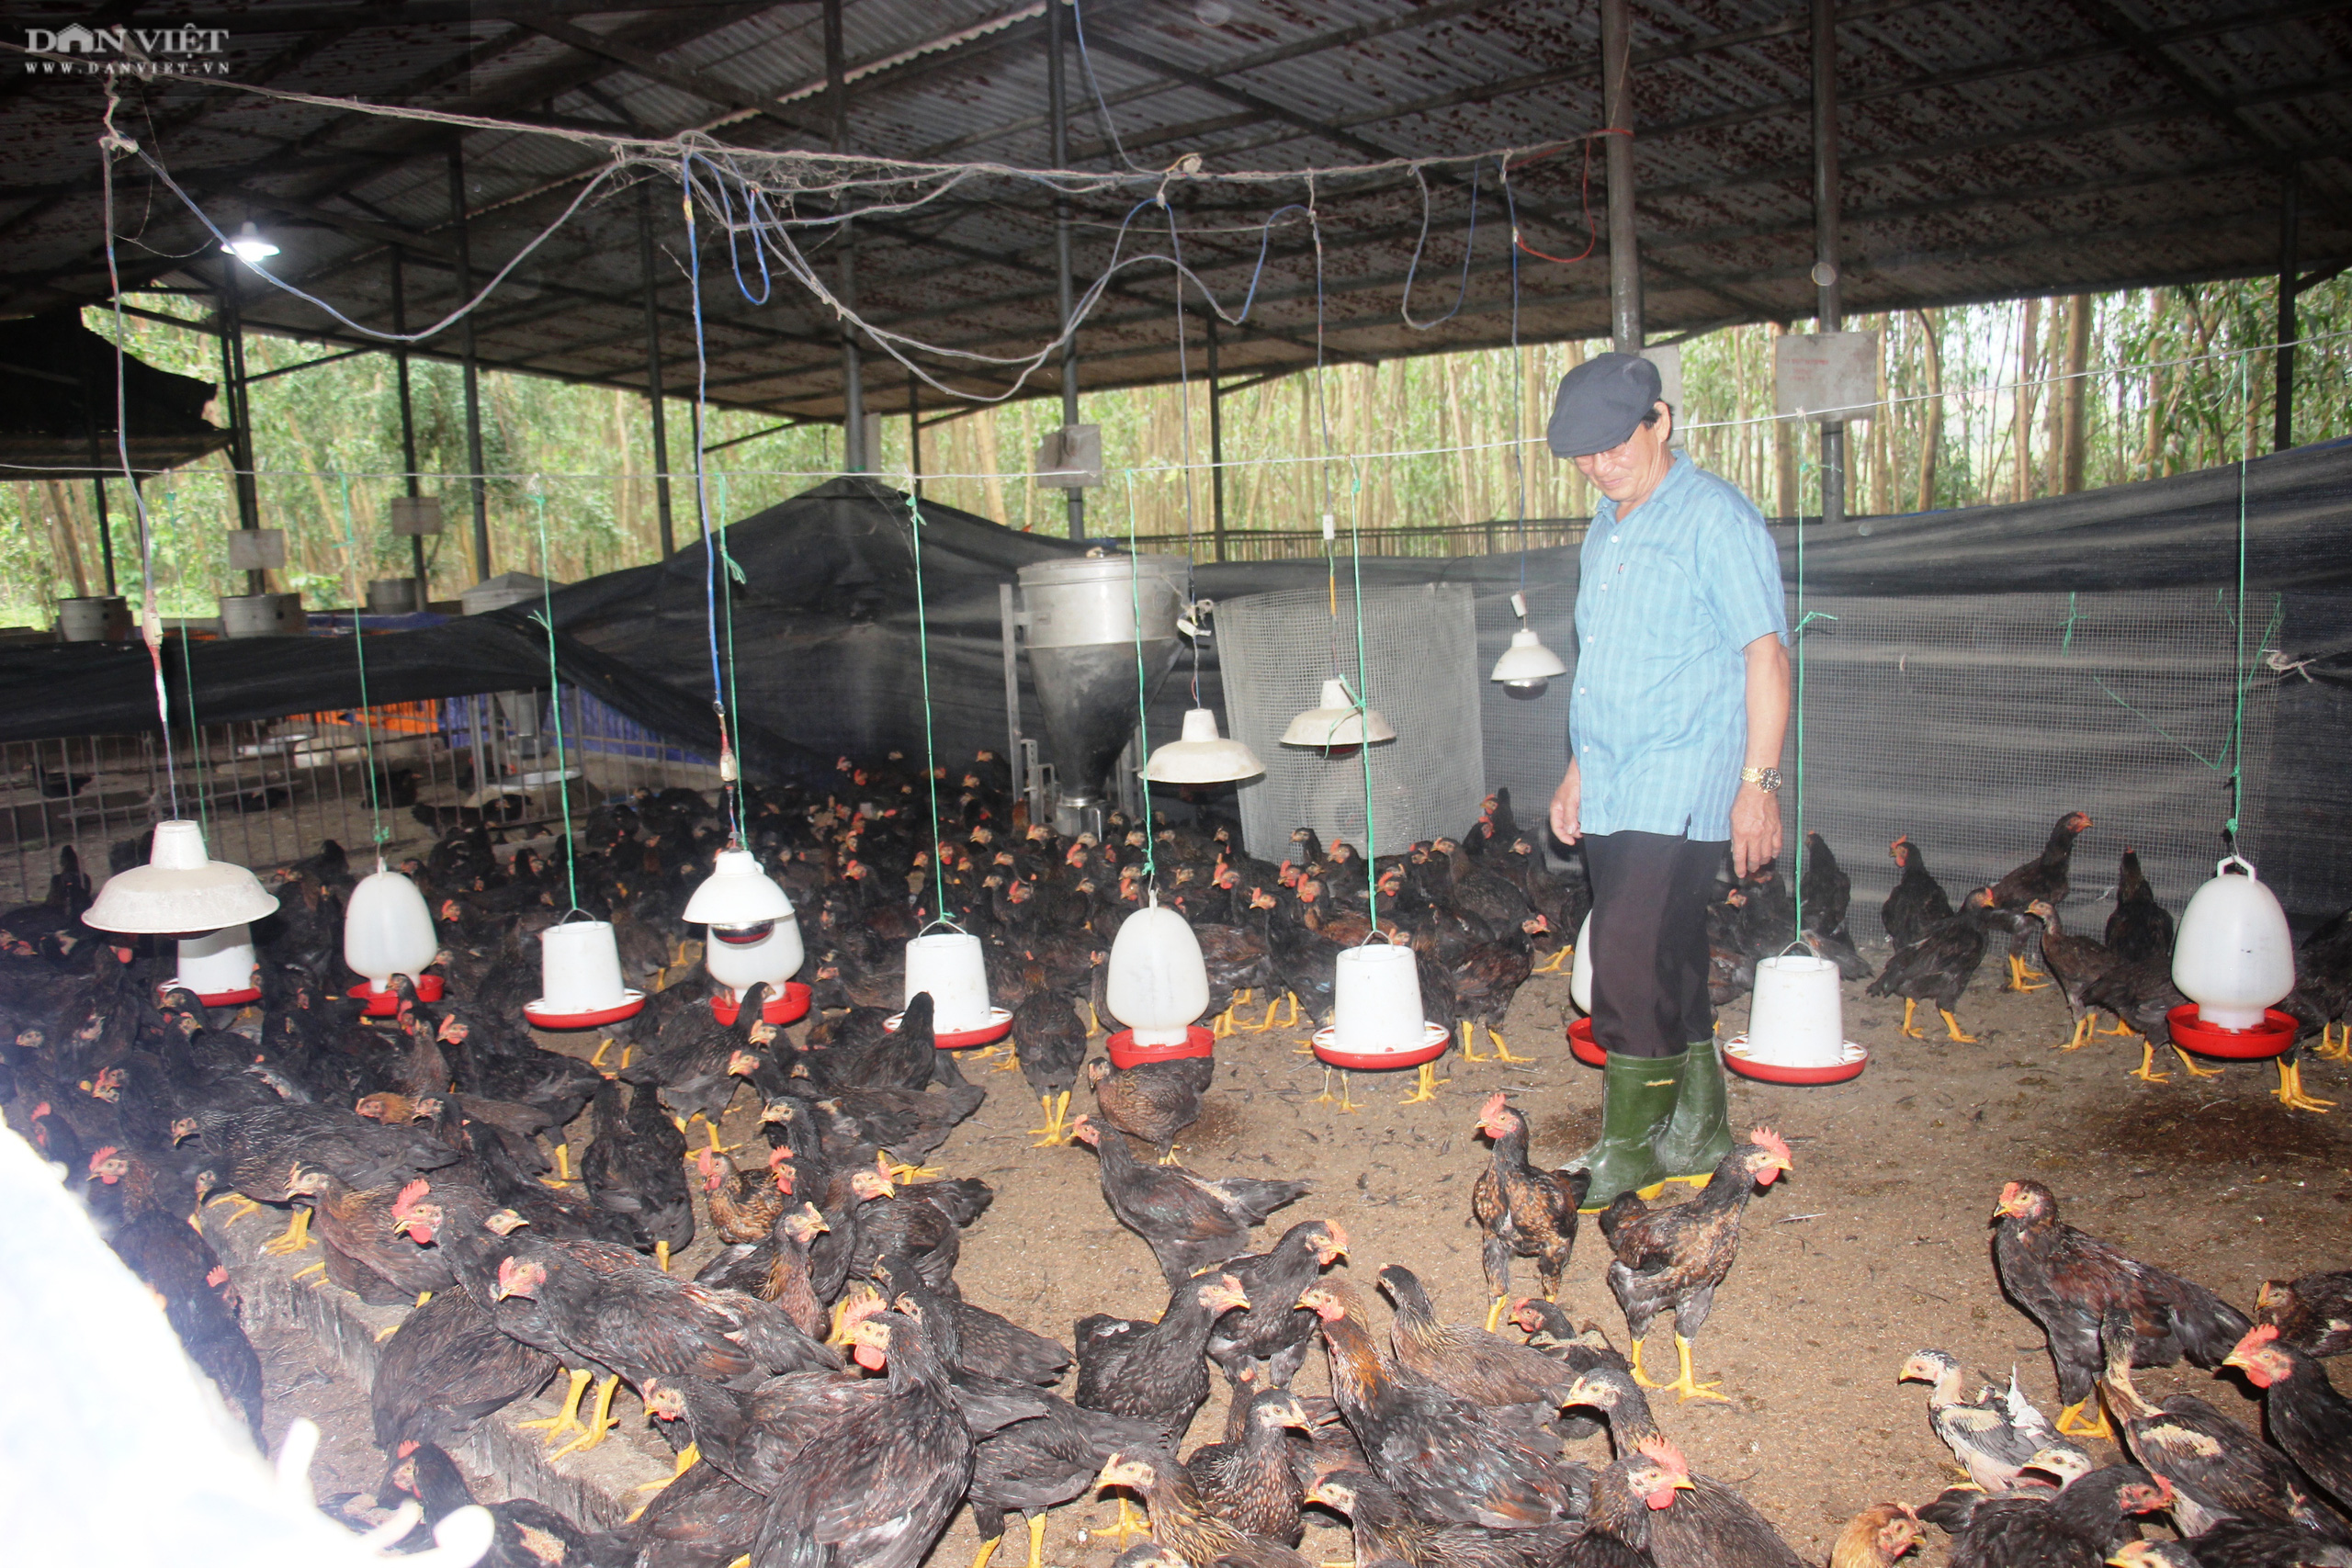 Bình Định: Giá thức ăn tăng vọt, người nuôi gà gặp cảnh lao đao - Ảnh 2.